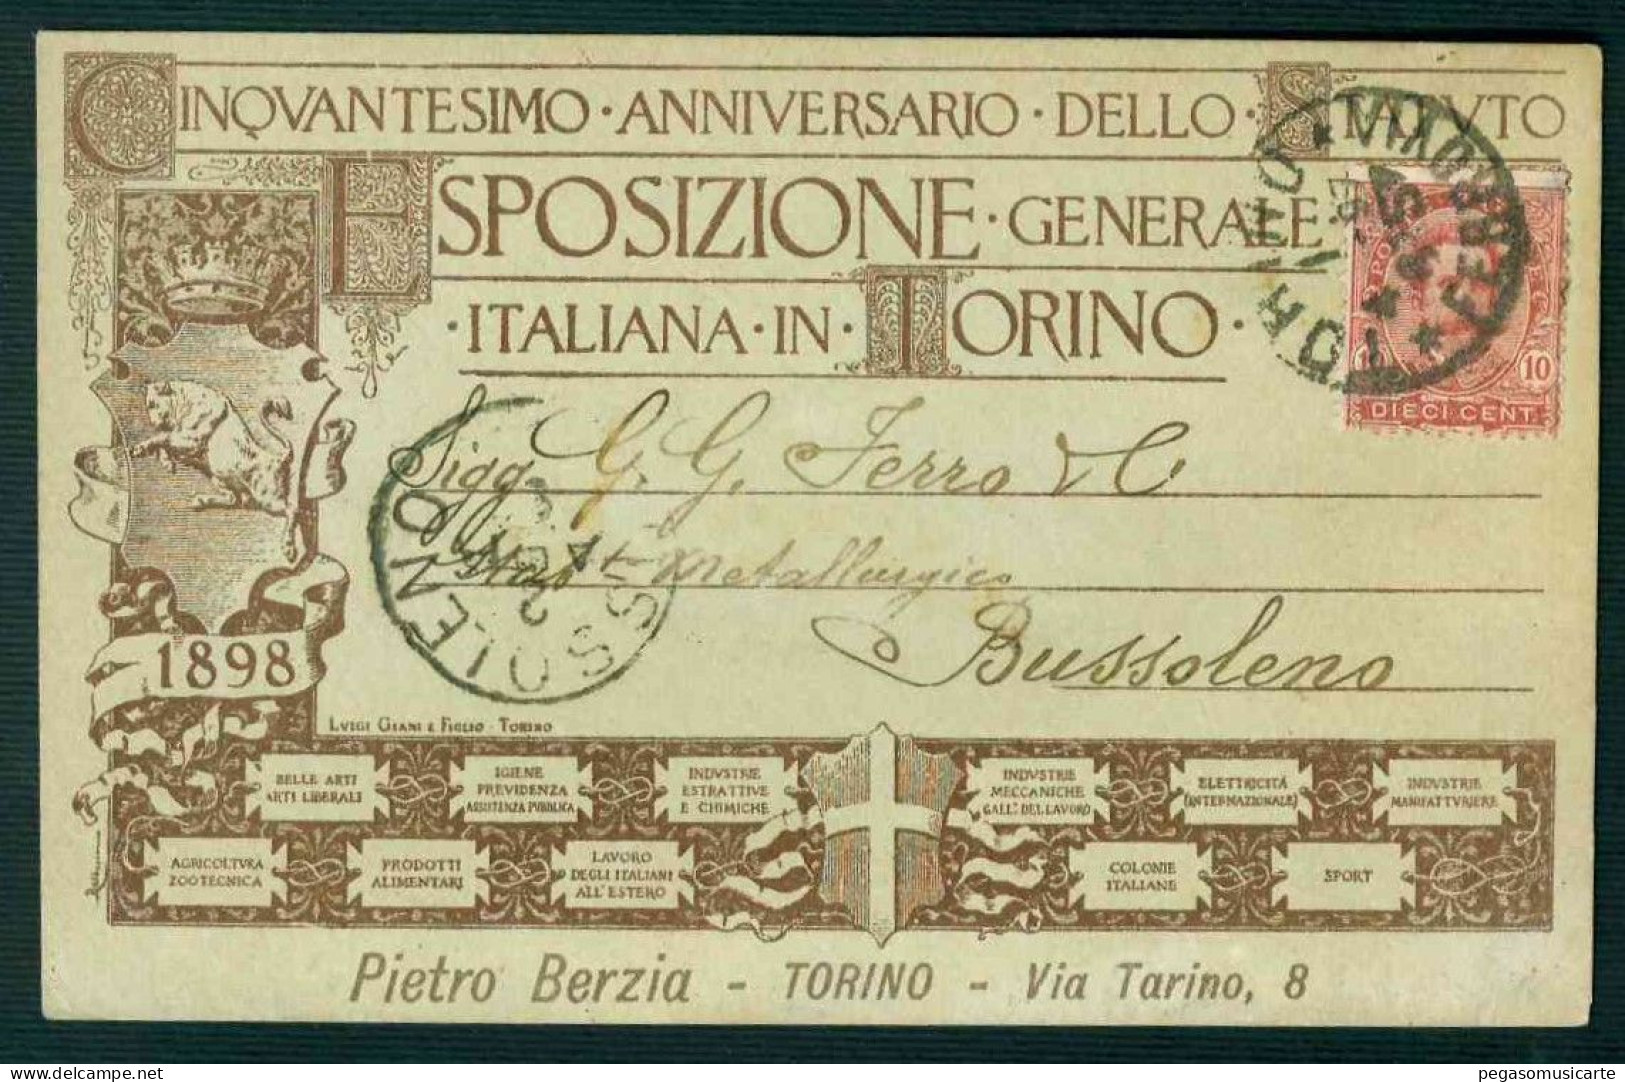 BK004 CINQUANTESIMO ANNIVERSARIO DELLO STATUTO ESPOSIZIONE GENERALE ITALIANA IN TORINO 1897 - Mostre, Esposizioni